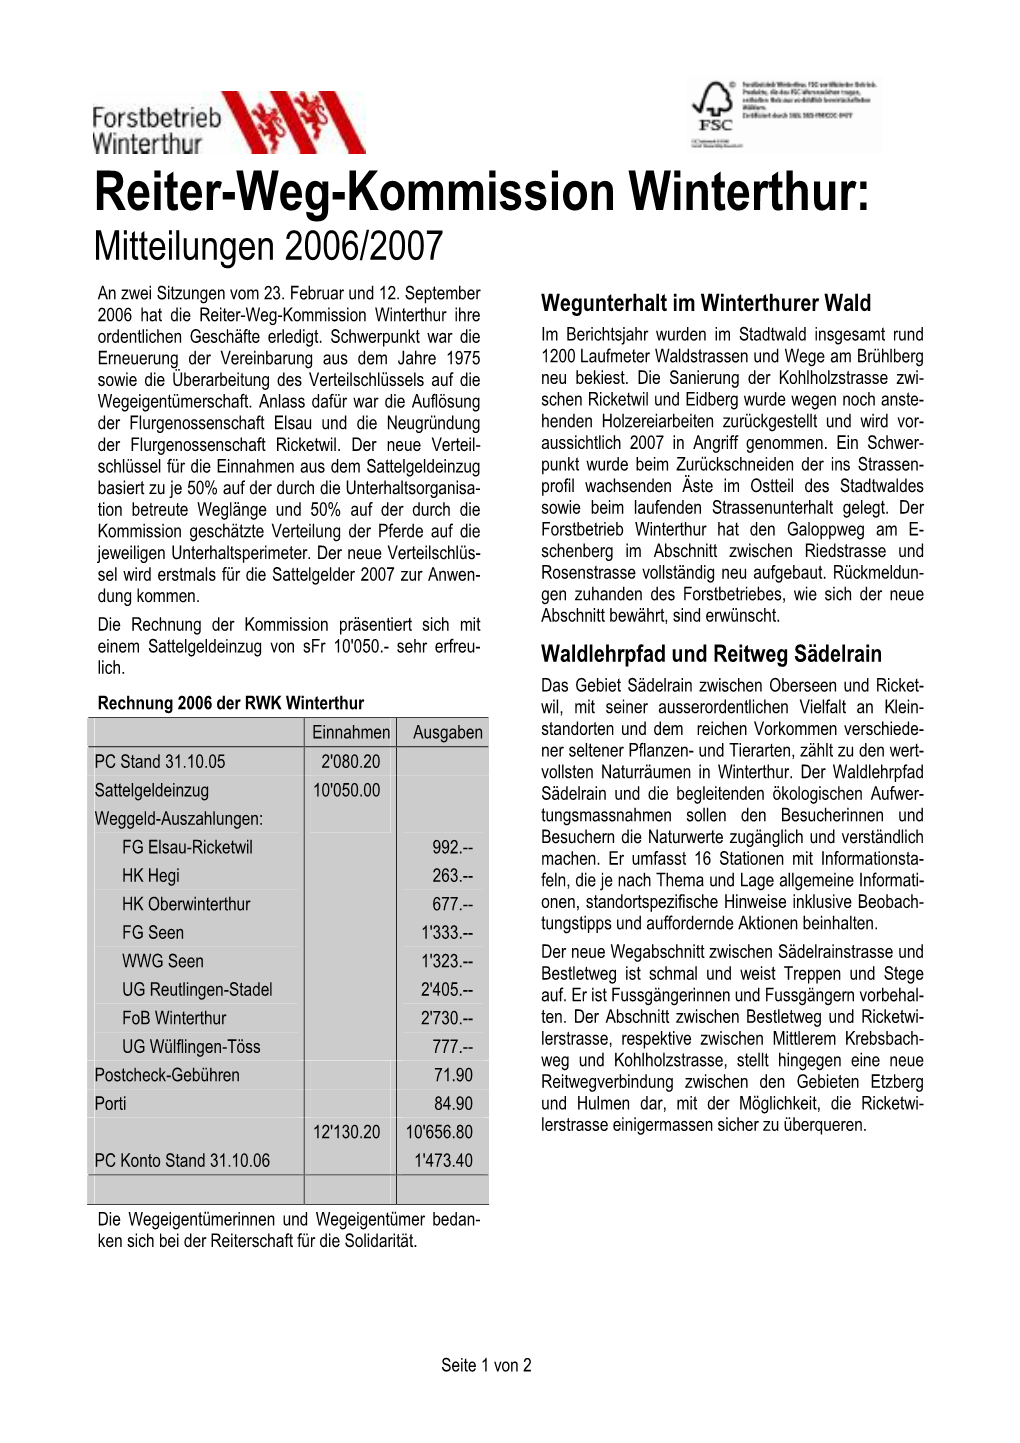 Reiter-Weg-Kommission Winterthur: Mitteilungen 2006/2007 an Zwei Sitzungen Vom 23